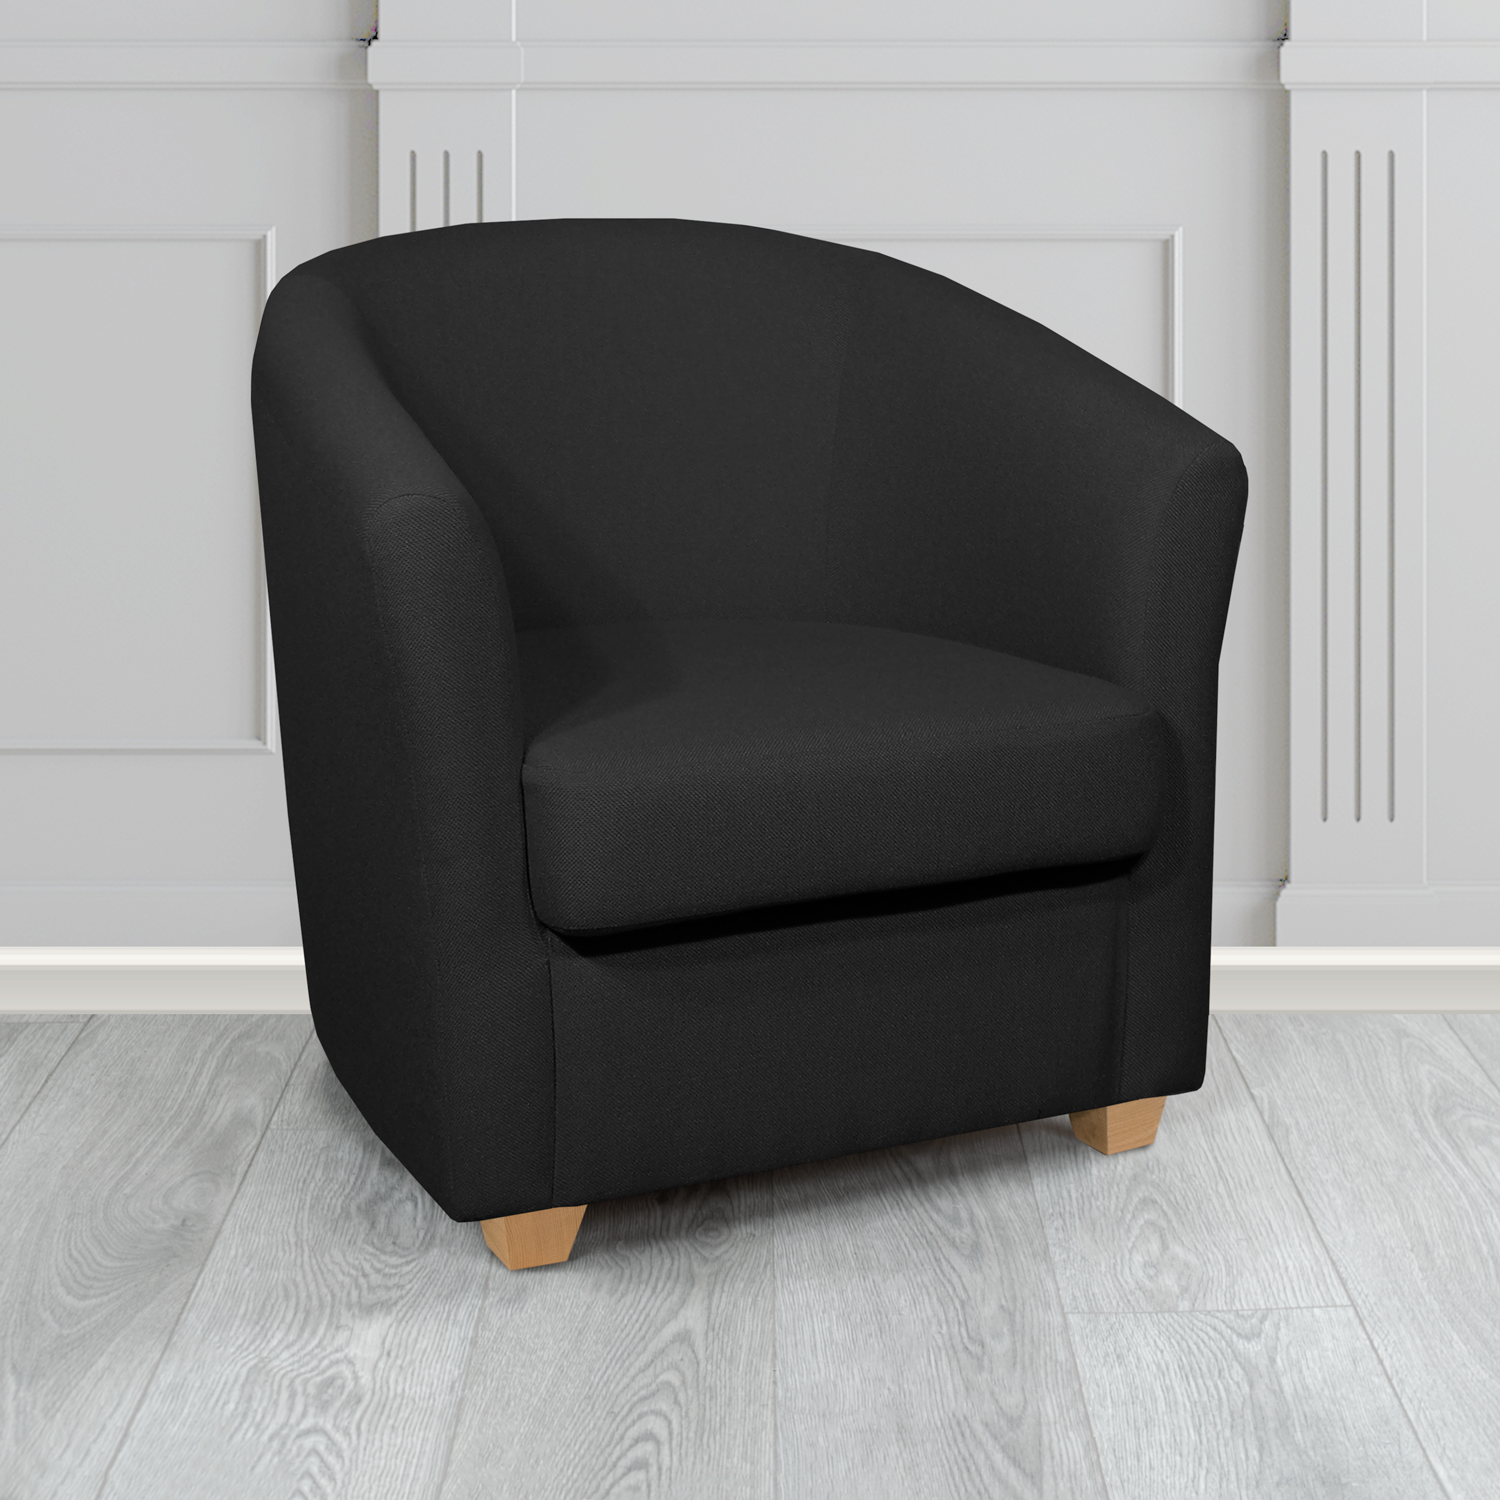 Cannes Tub Chair in Mainline Plus Black IF059 Crib 5 Fabric - The Tub Chair Shop